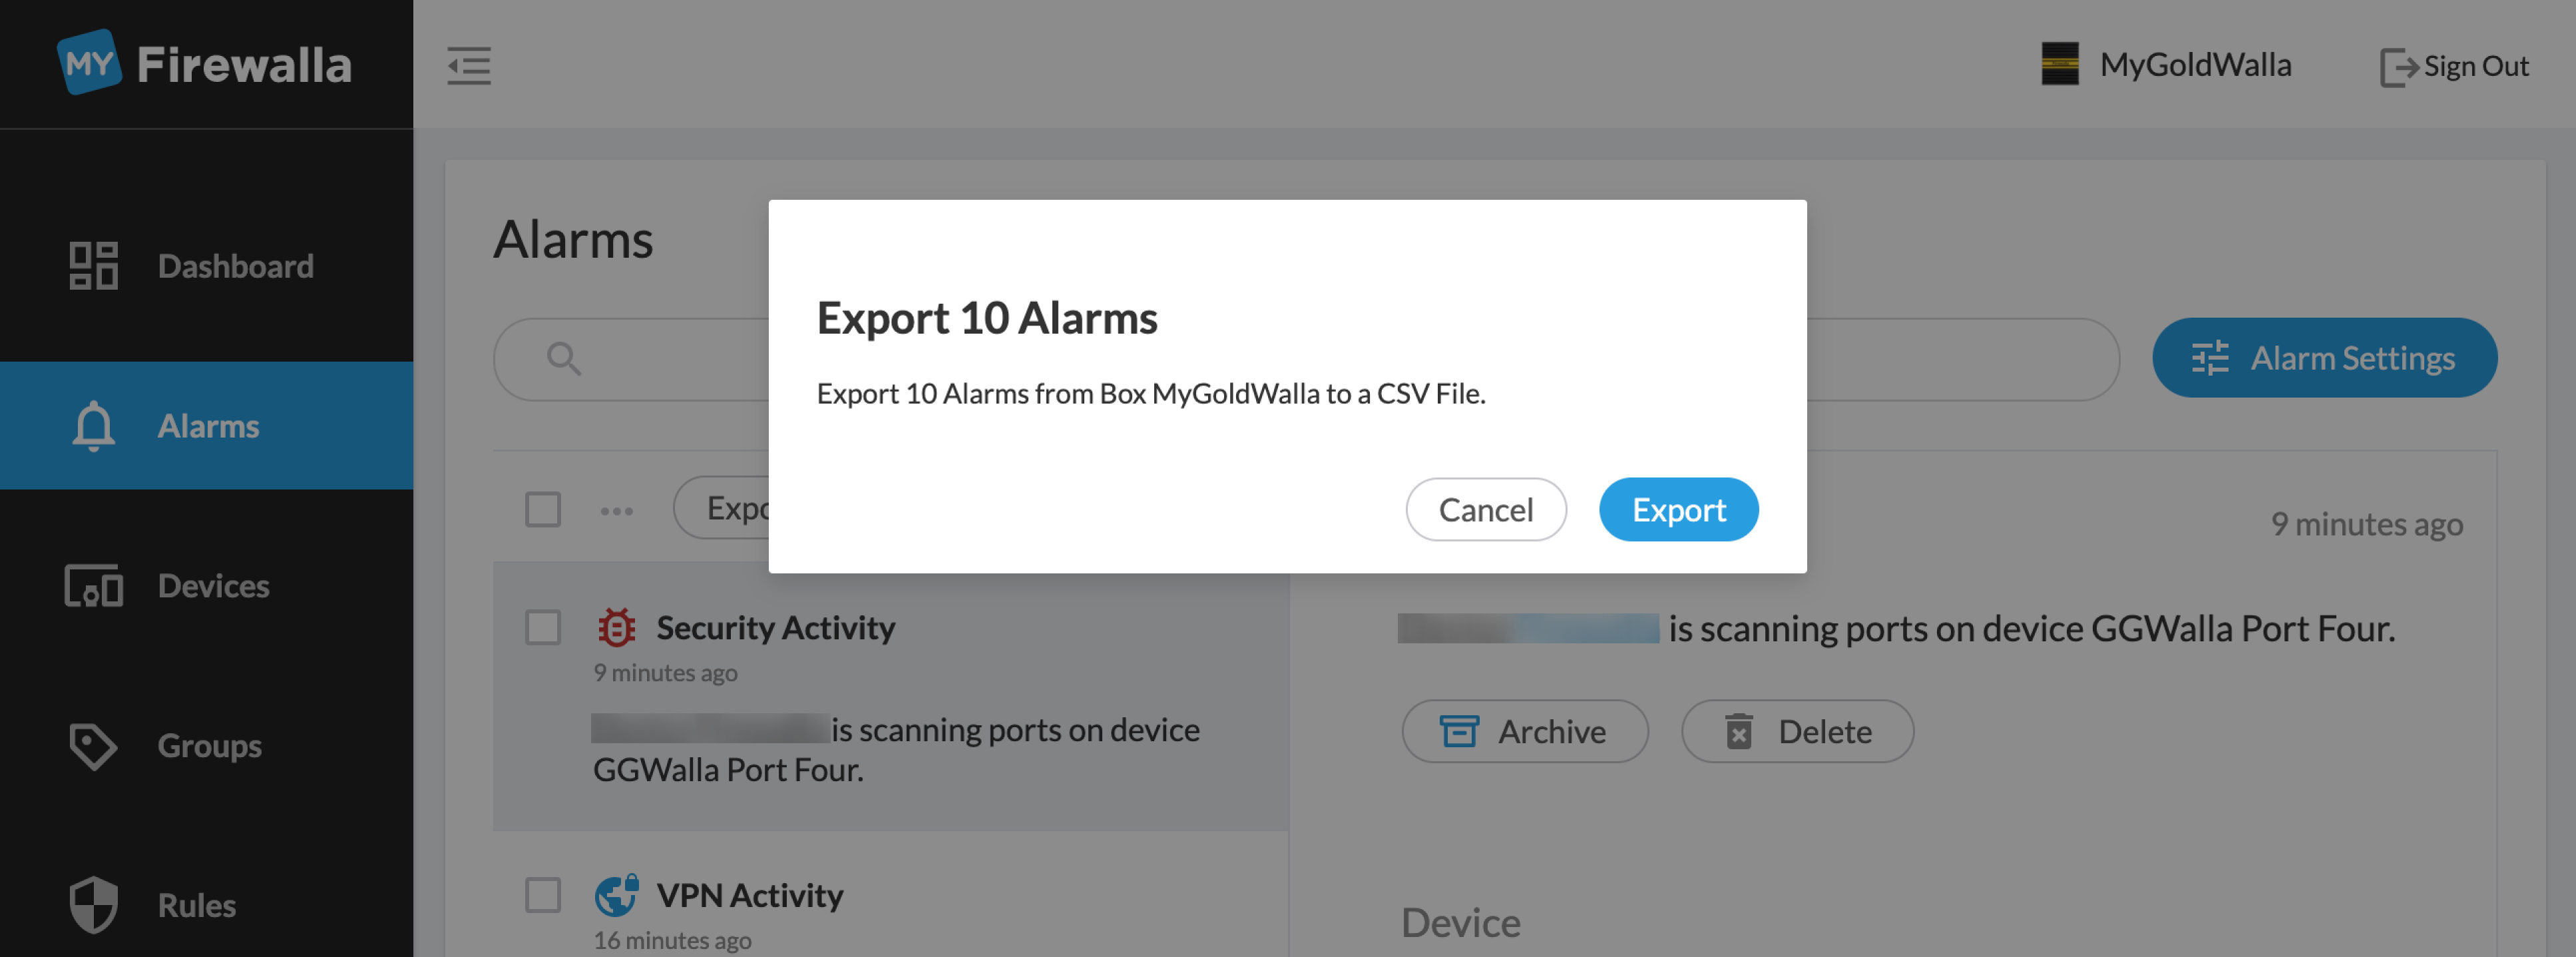 Alarm_Export.png